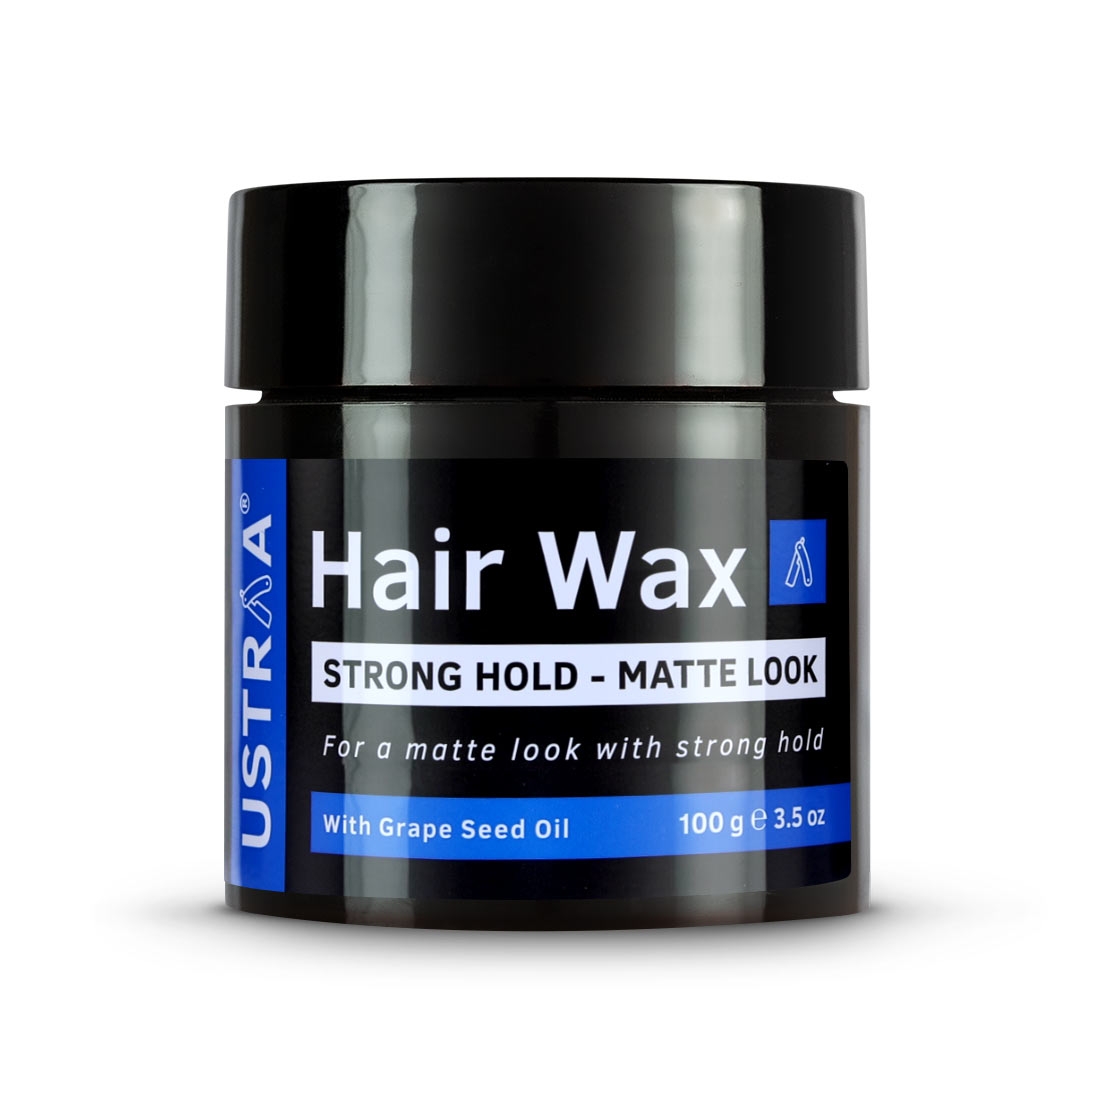 Ustraa | Ustraa Black Deodorant 150ml & Hair Wax Matt Look 100g 5